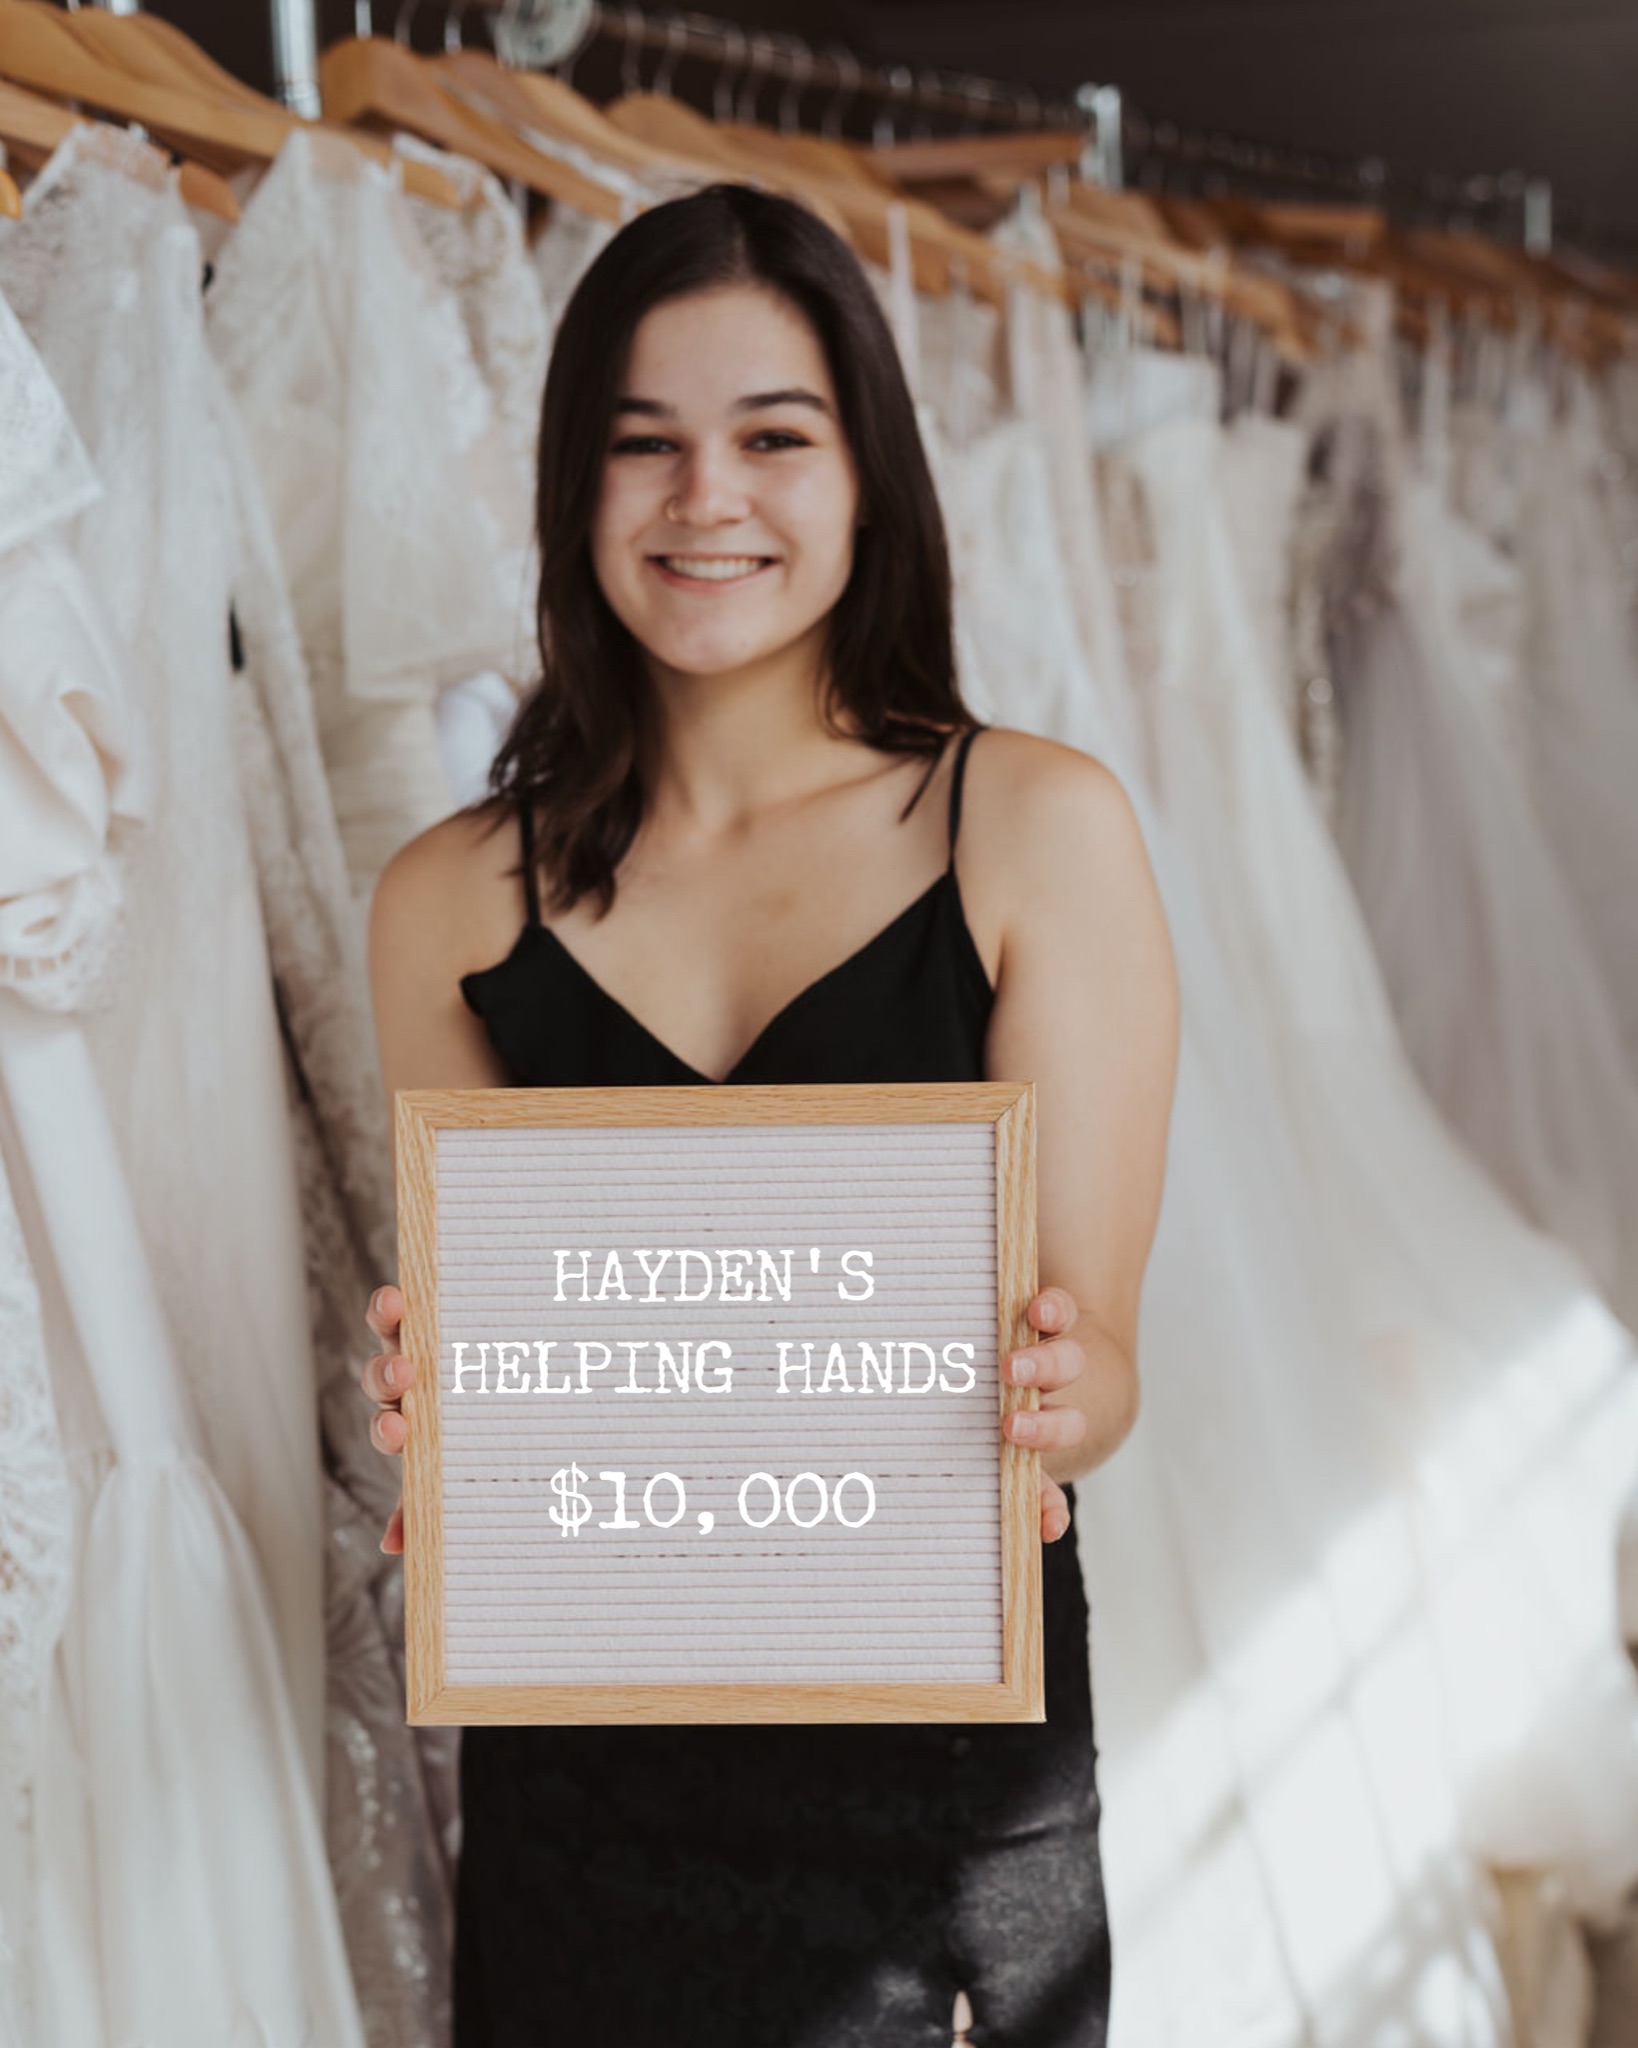 2023 Gift of $10,000 to Hayden’s Helping Hands!